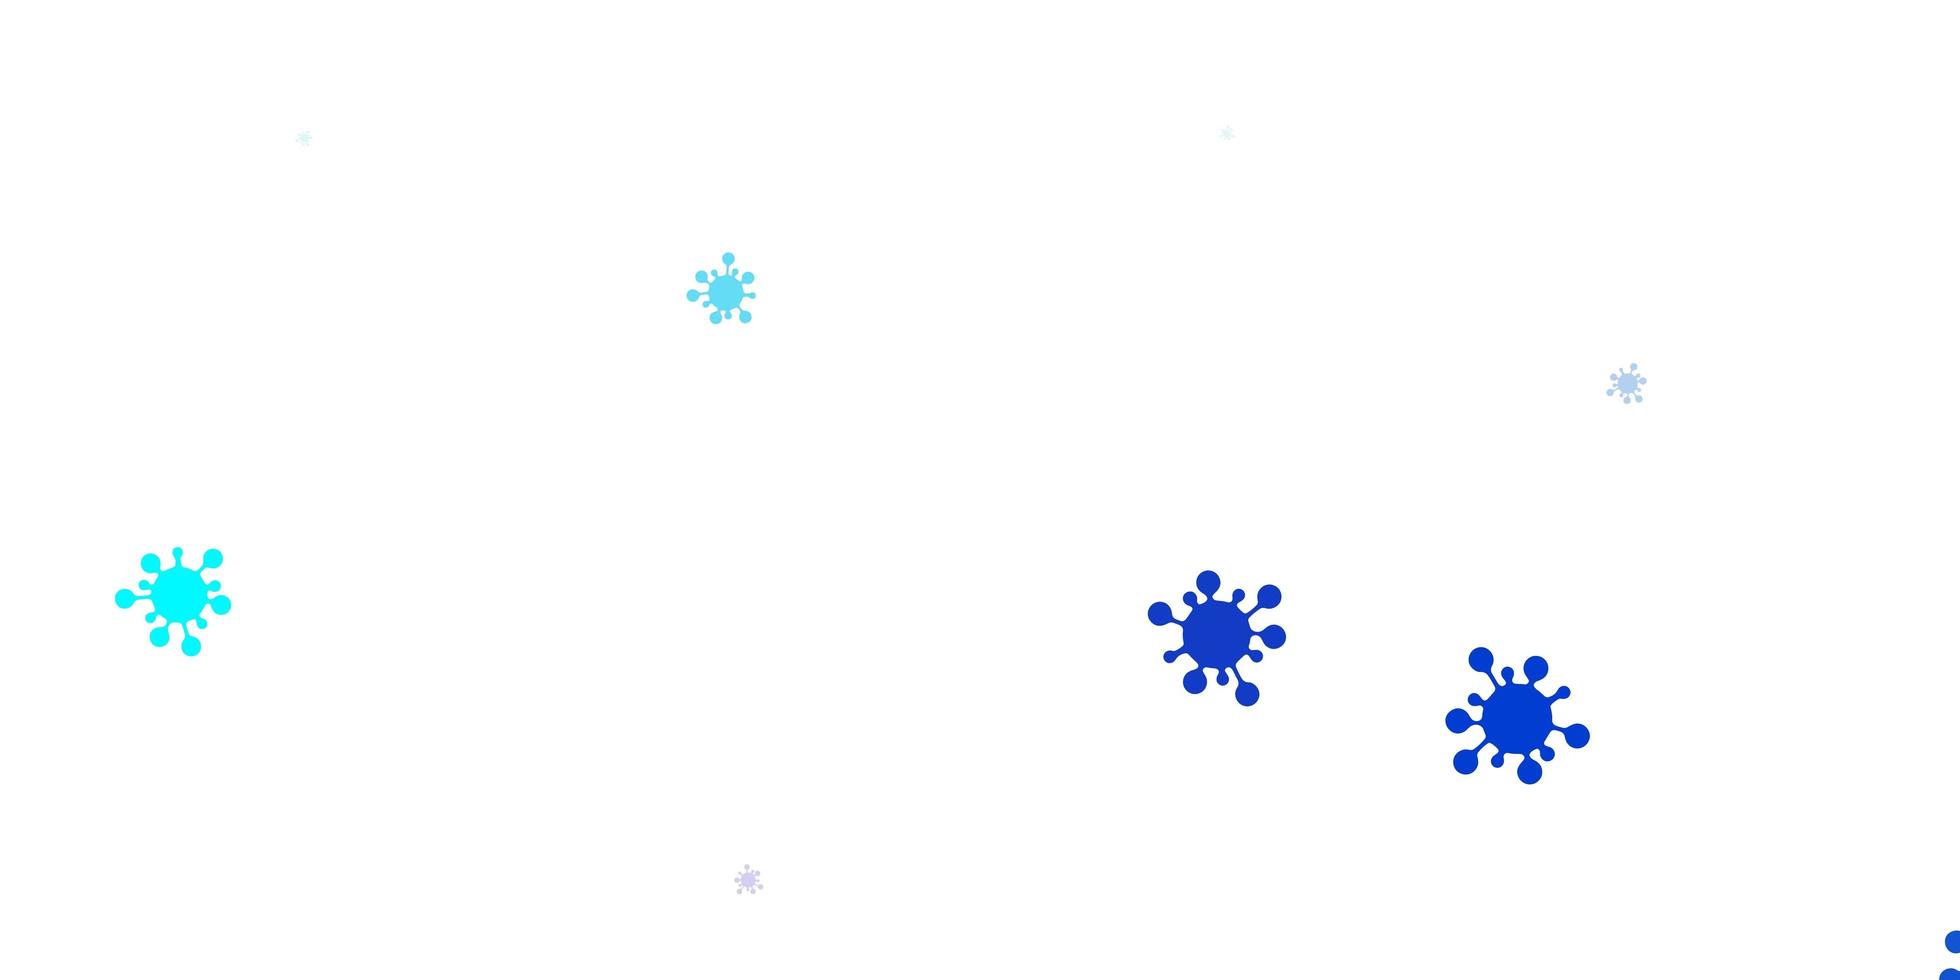 hellrosa, blauer Vektorhintergrund mit Virensymbolen. vektor